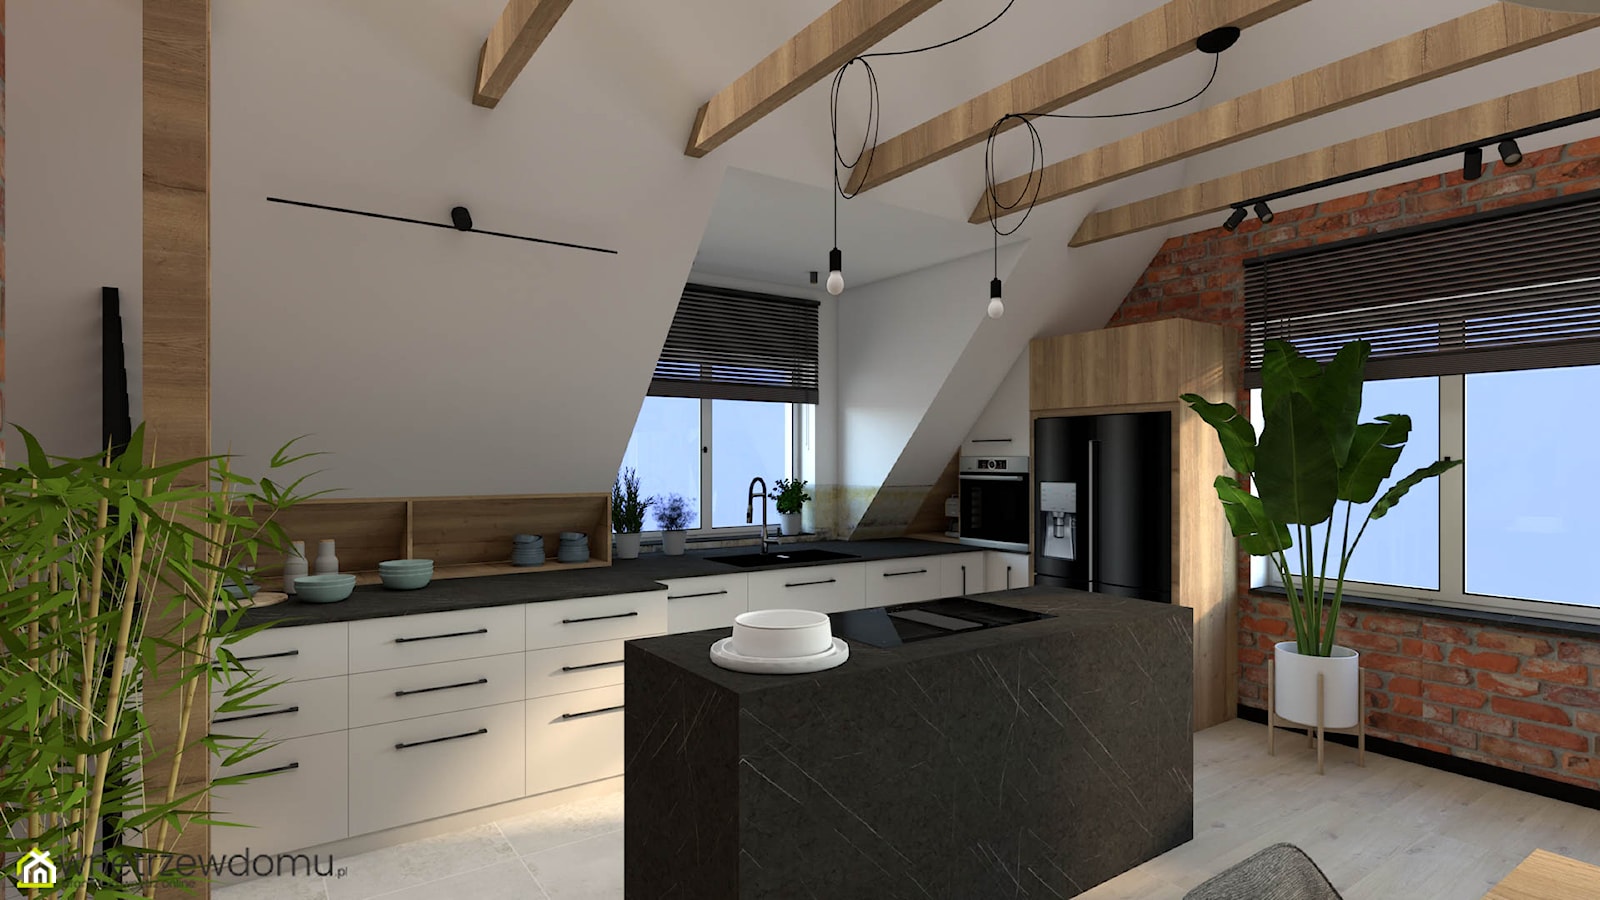 Salon z kuchnią w stylu loftowym na poddaszu - zdjęcie od wnetrzewdomu - Homebook